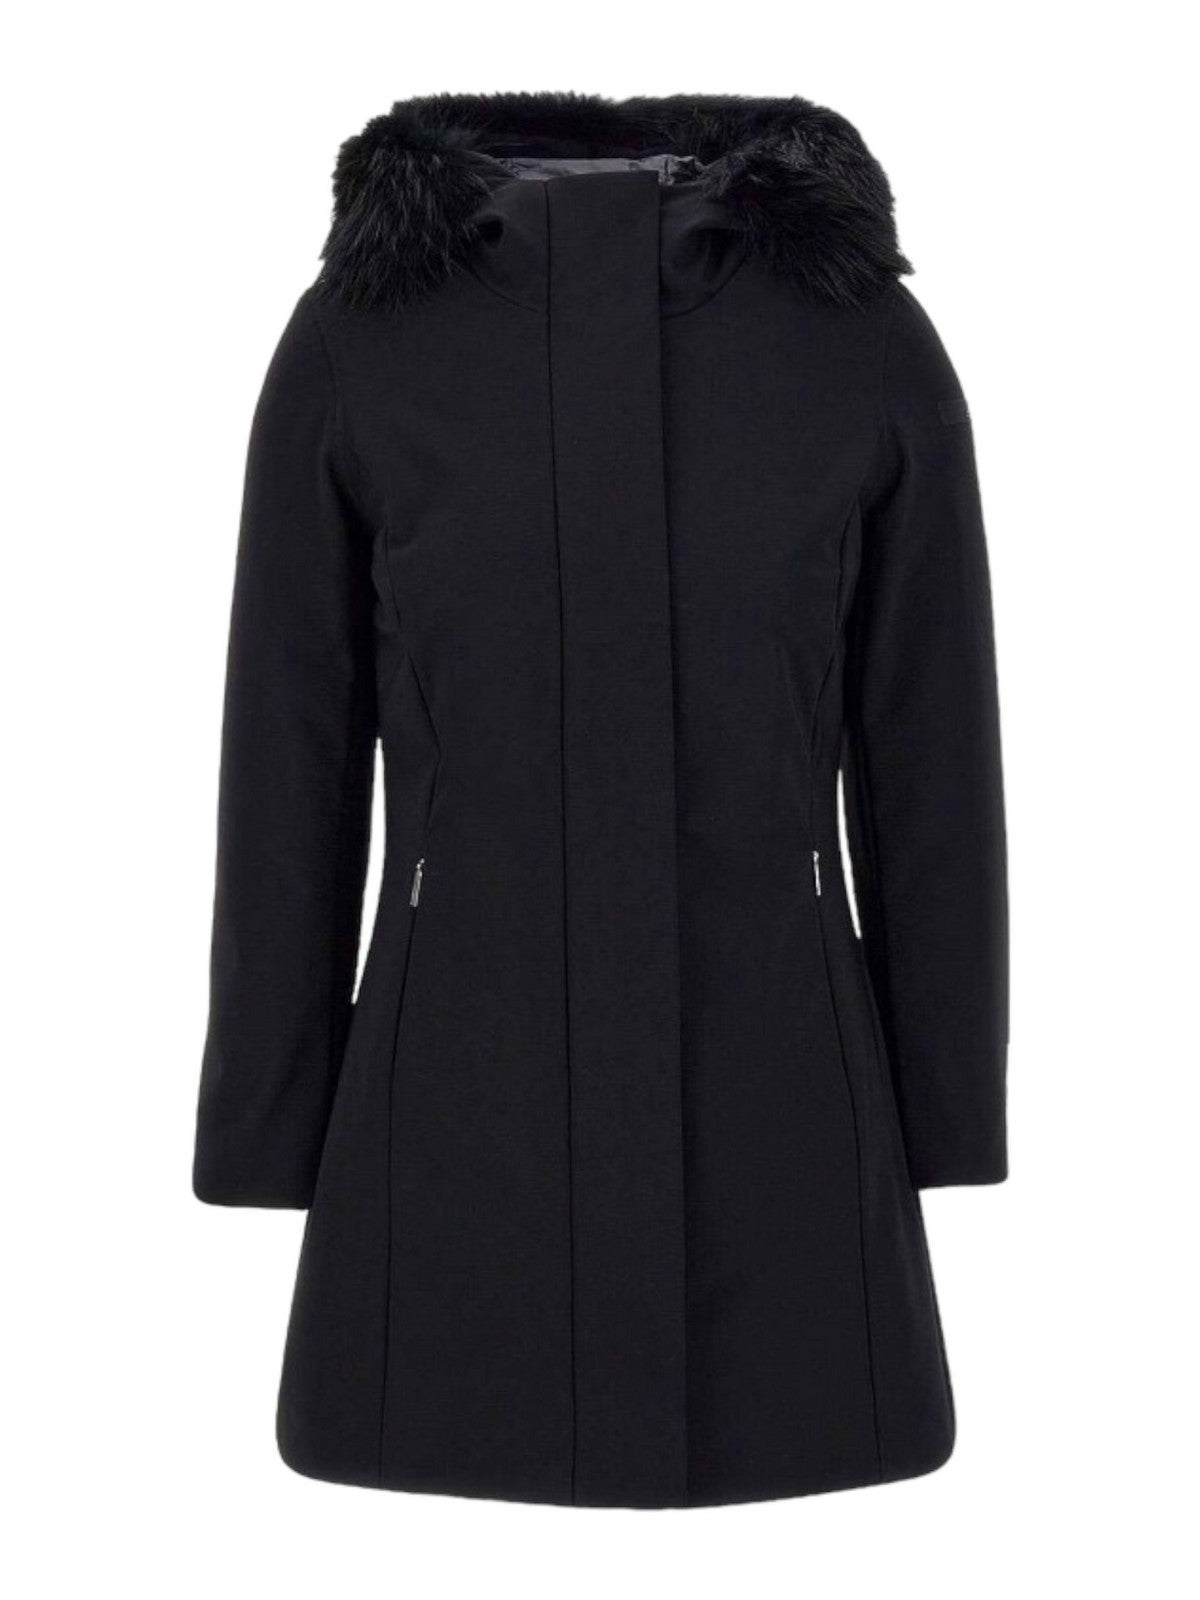 RRD Women's Jacket W23502FT 10 Black